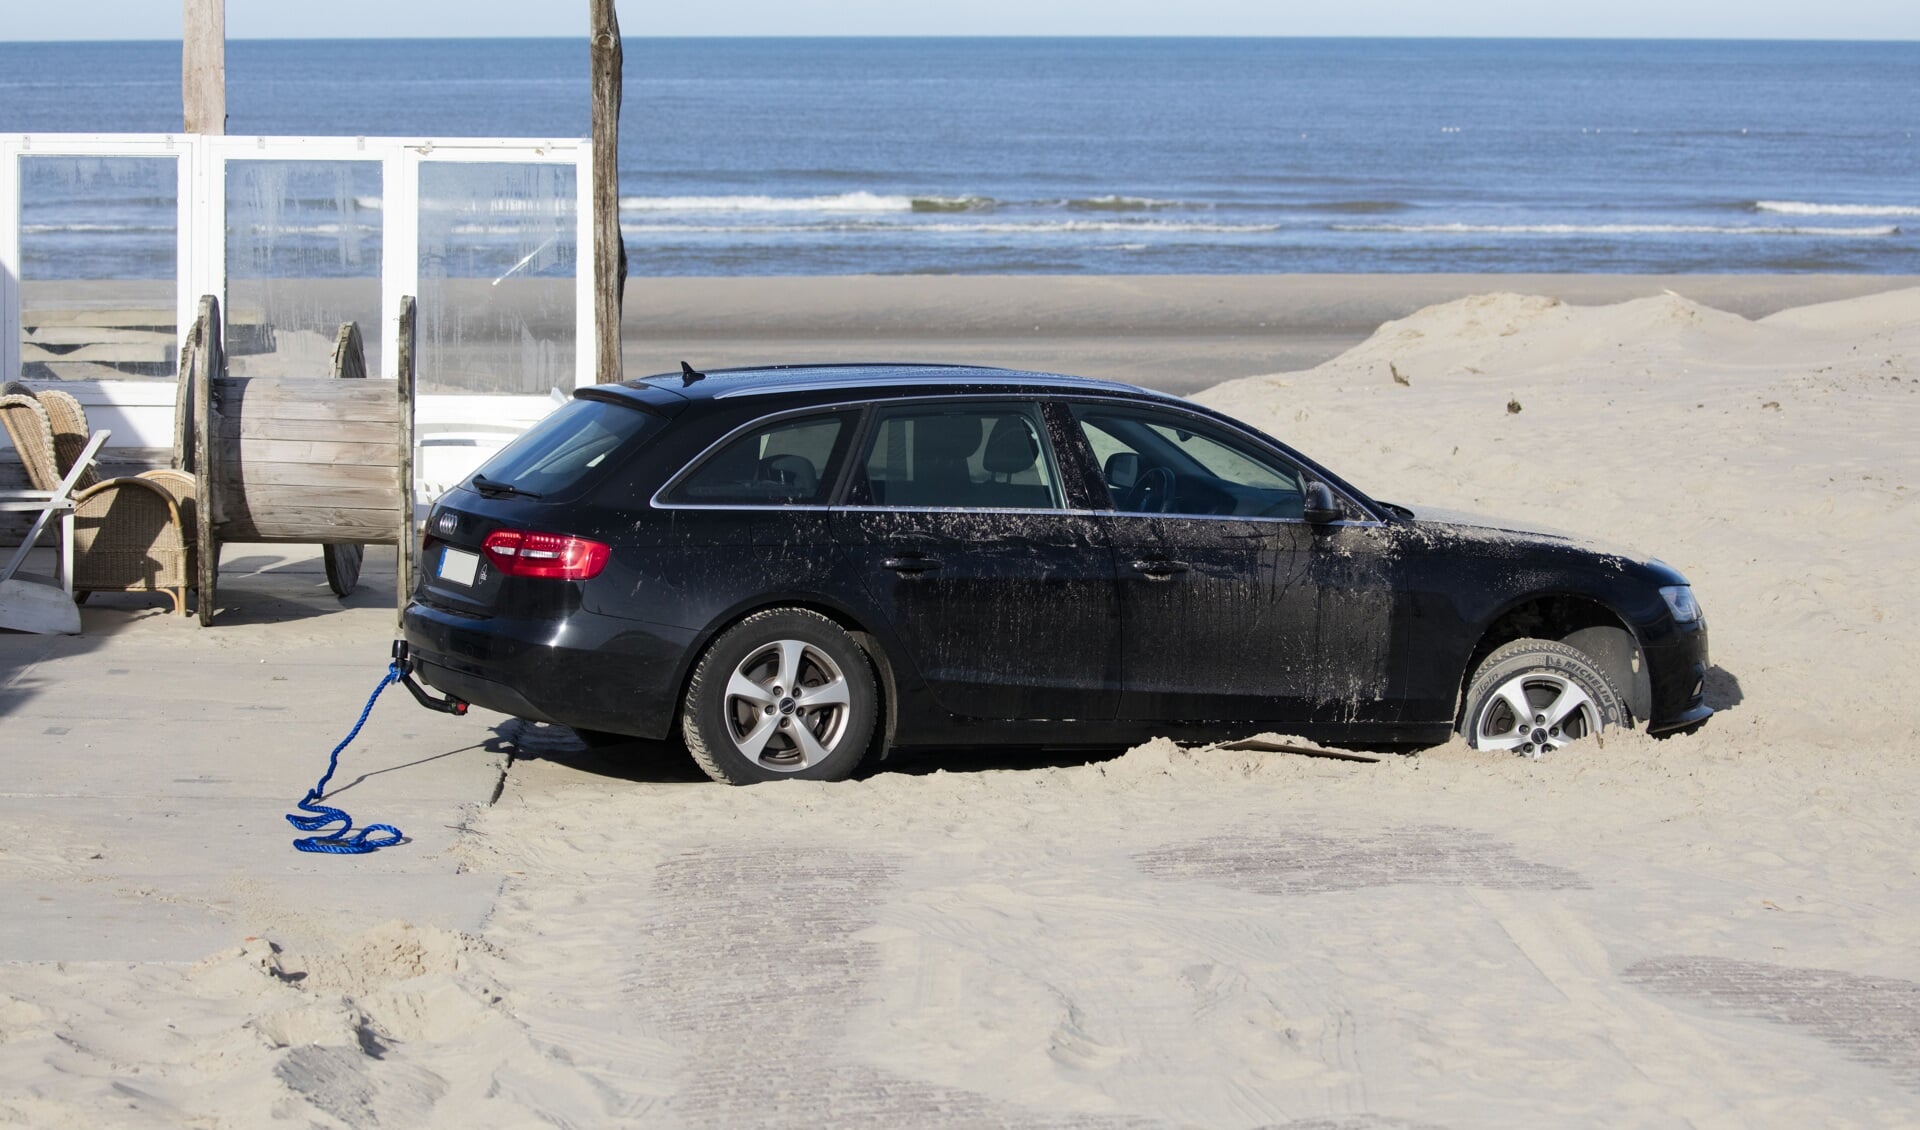 De auto vast op het strand bij Paal 12.